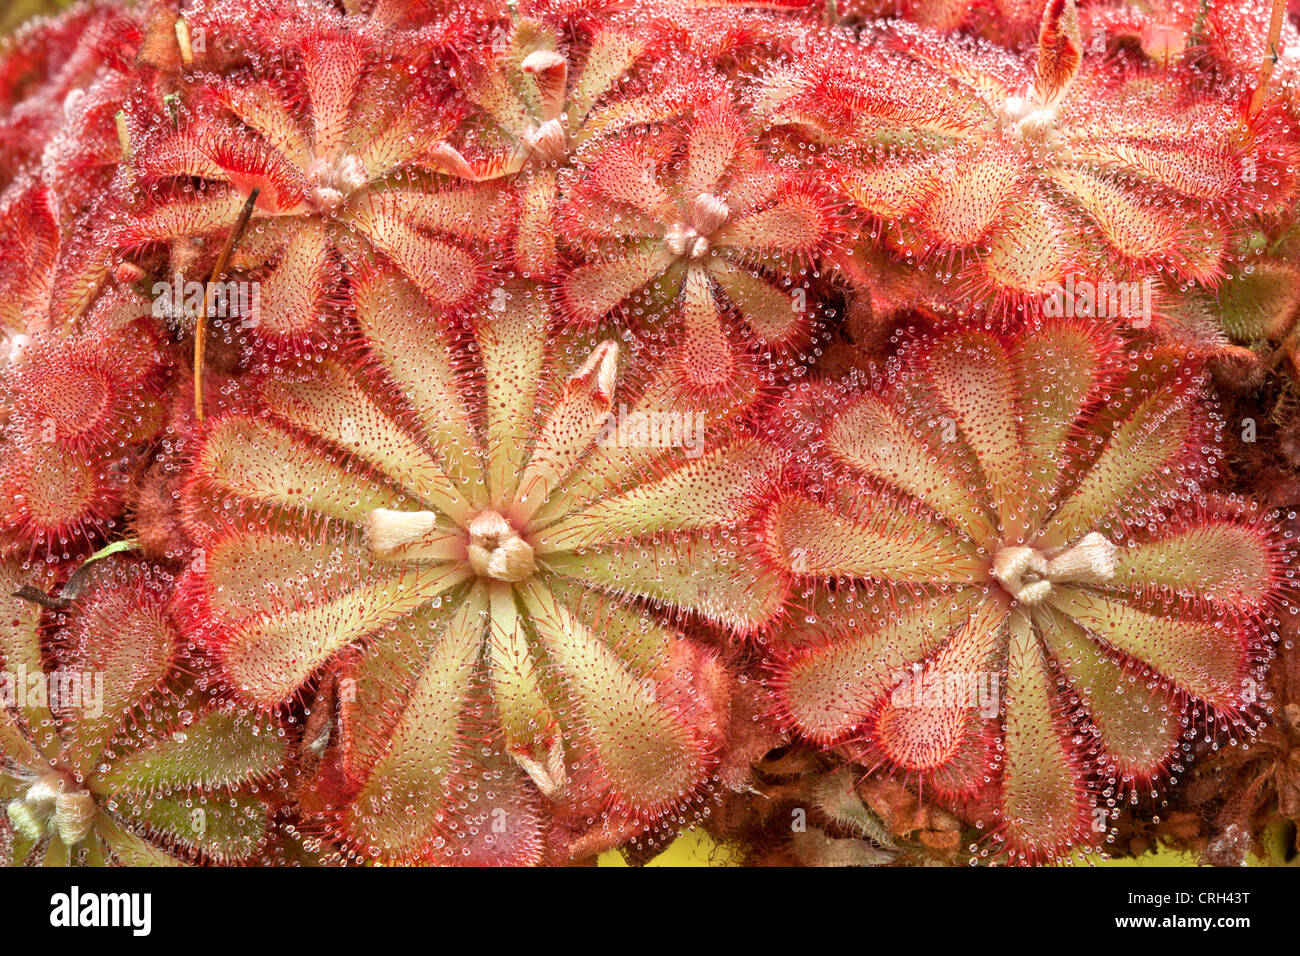 Drosera-Sonnentau fleischfressende Pflanze wächst. Stockfoto